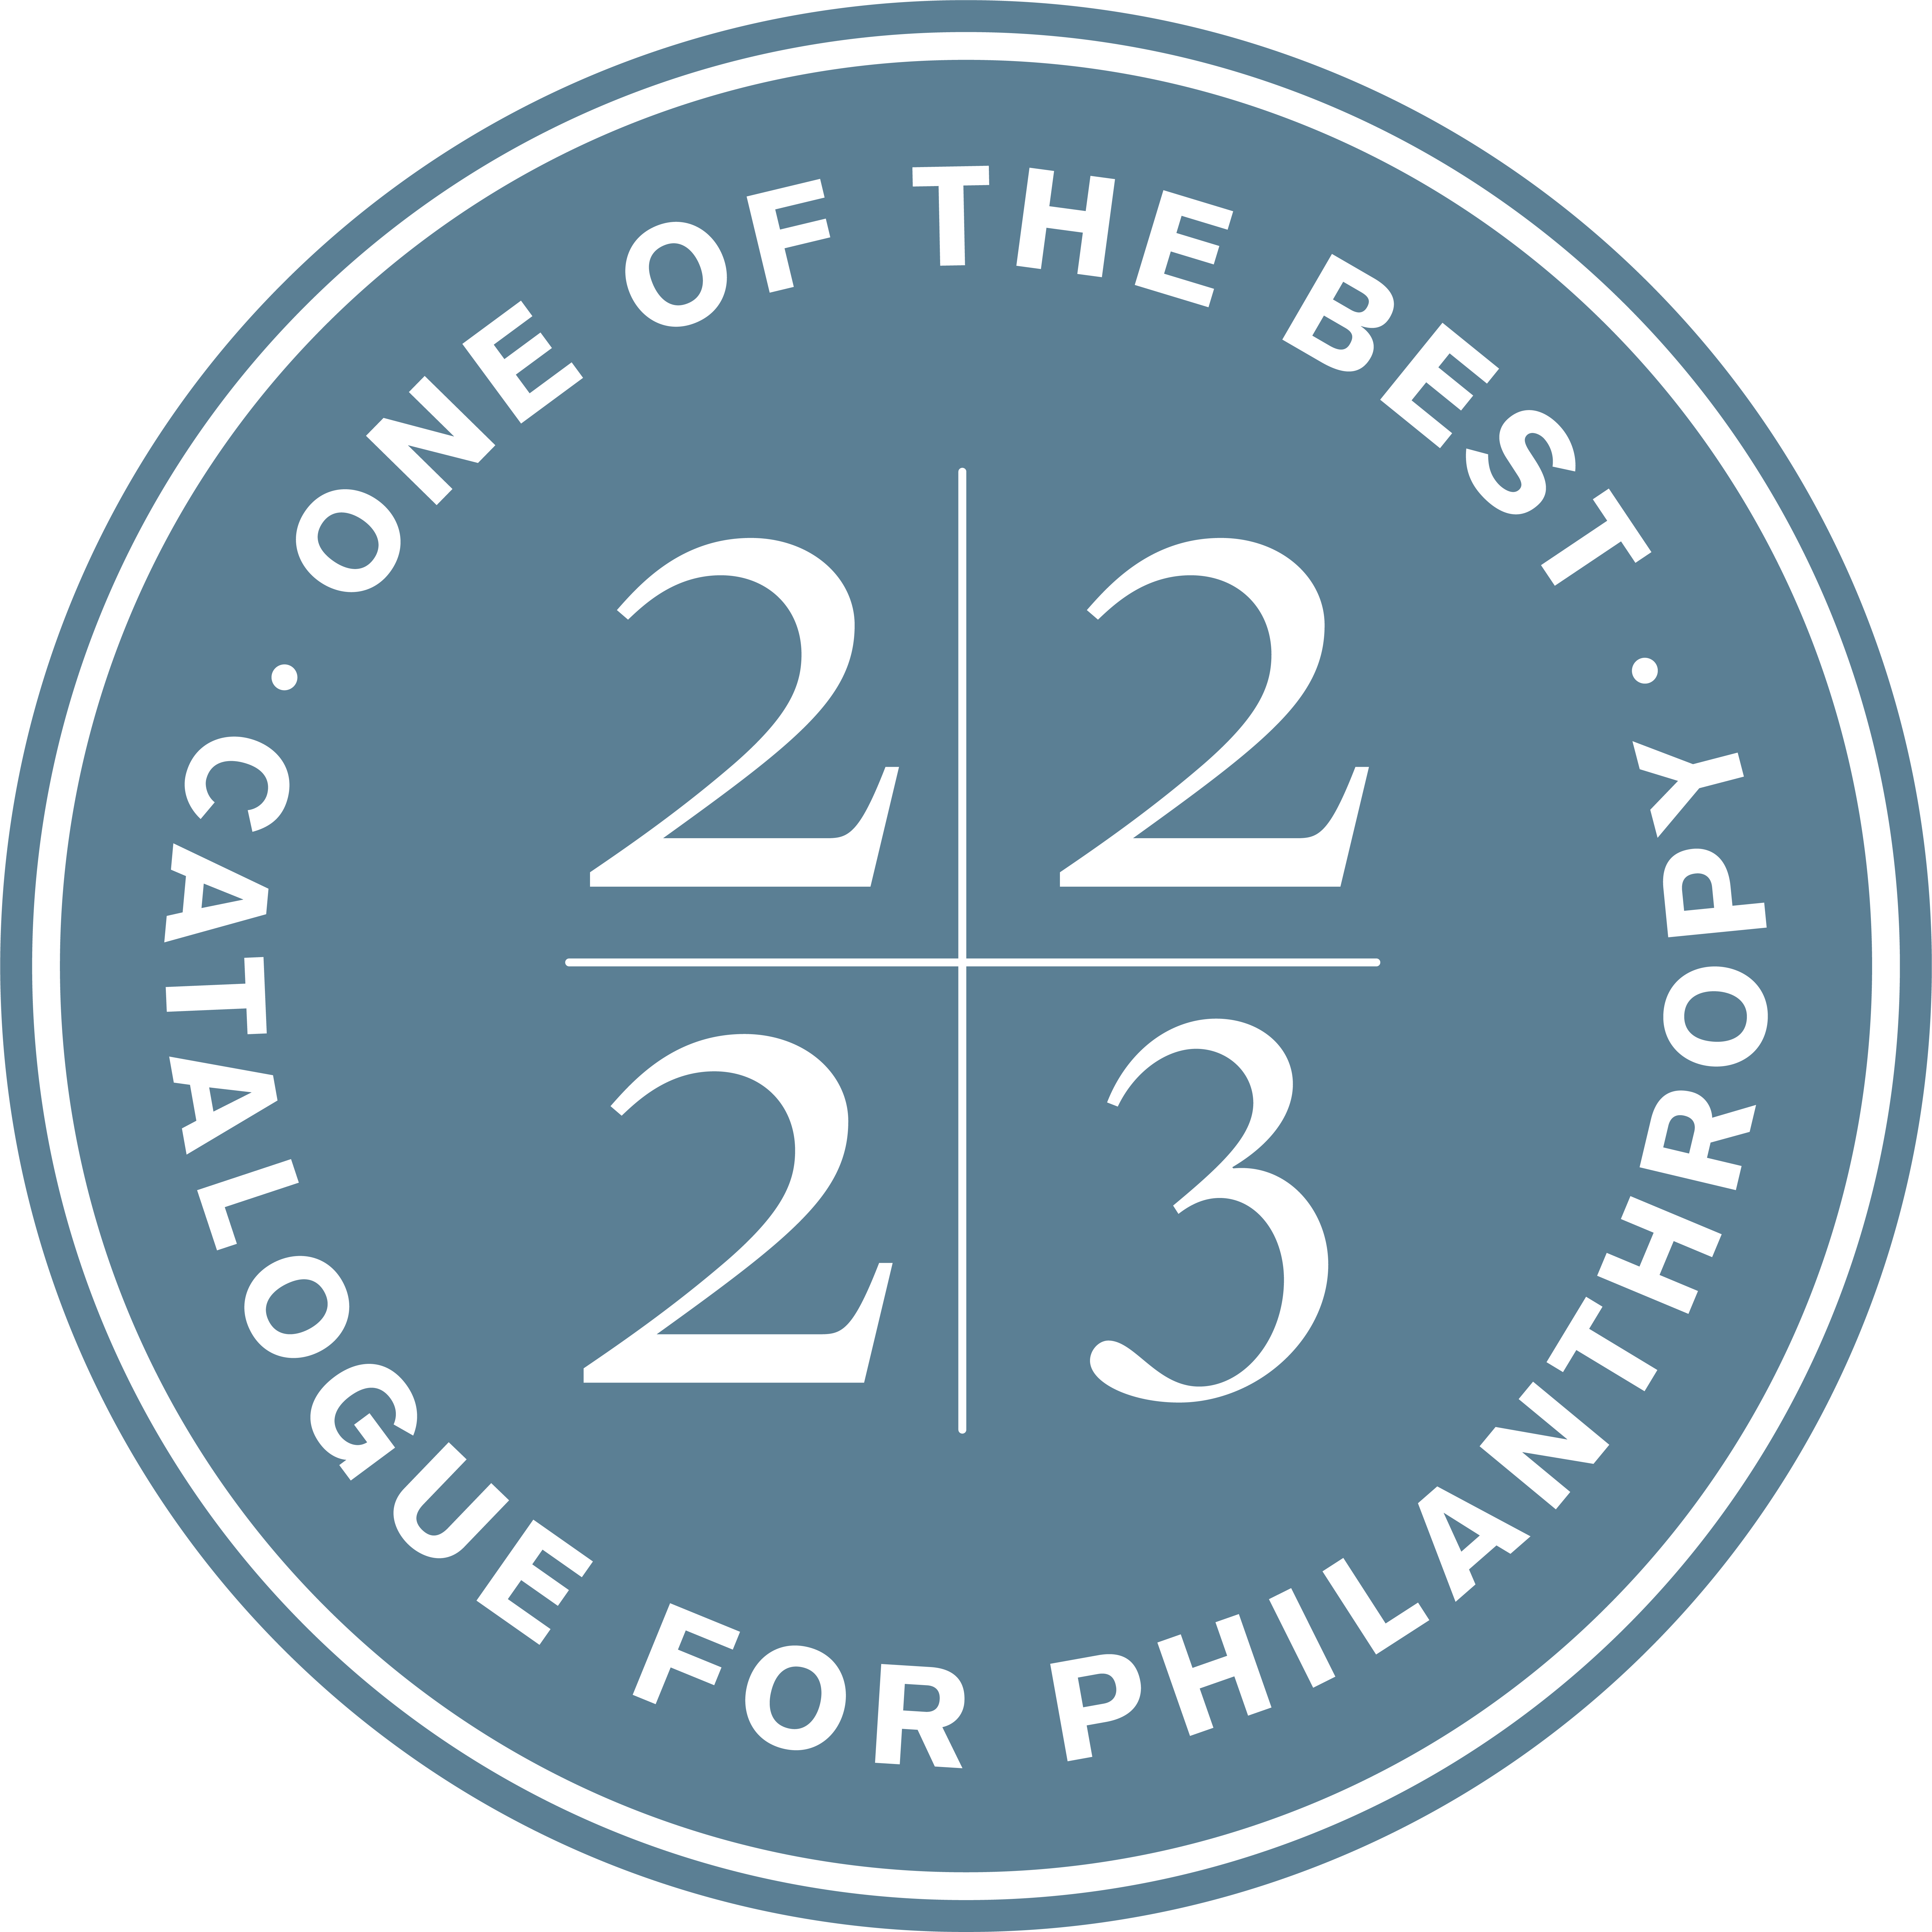 Catalogue For Philanthropy